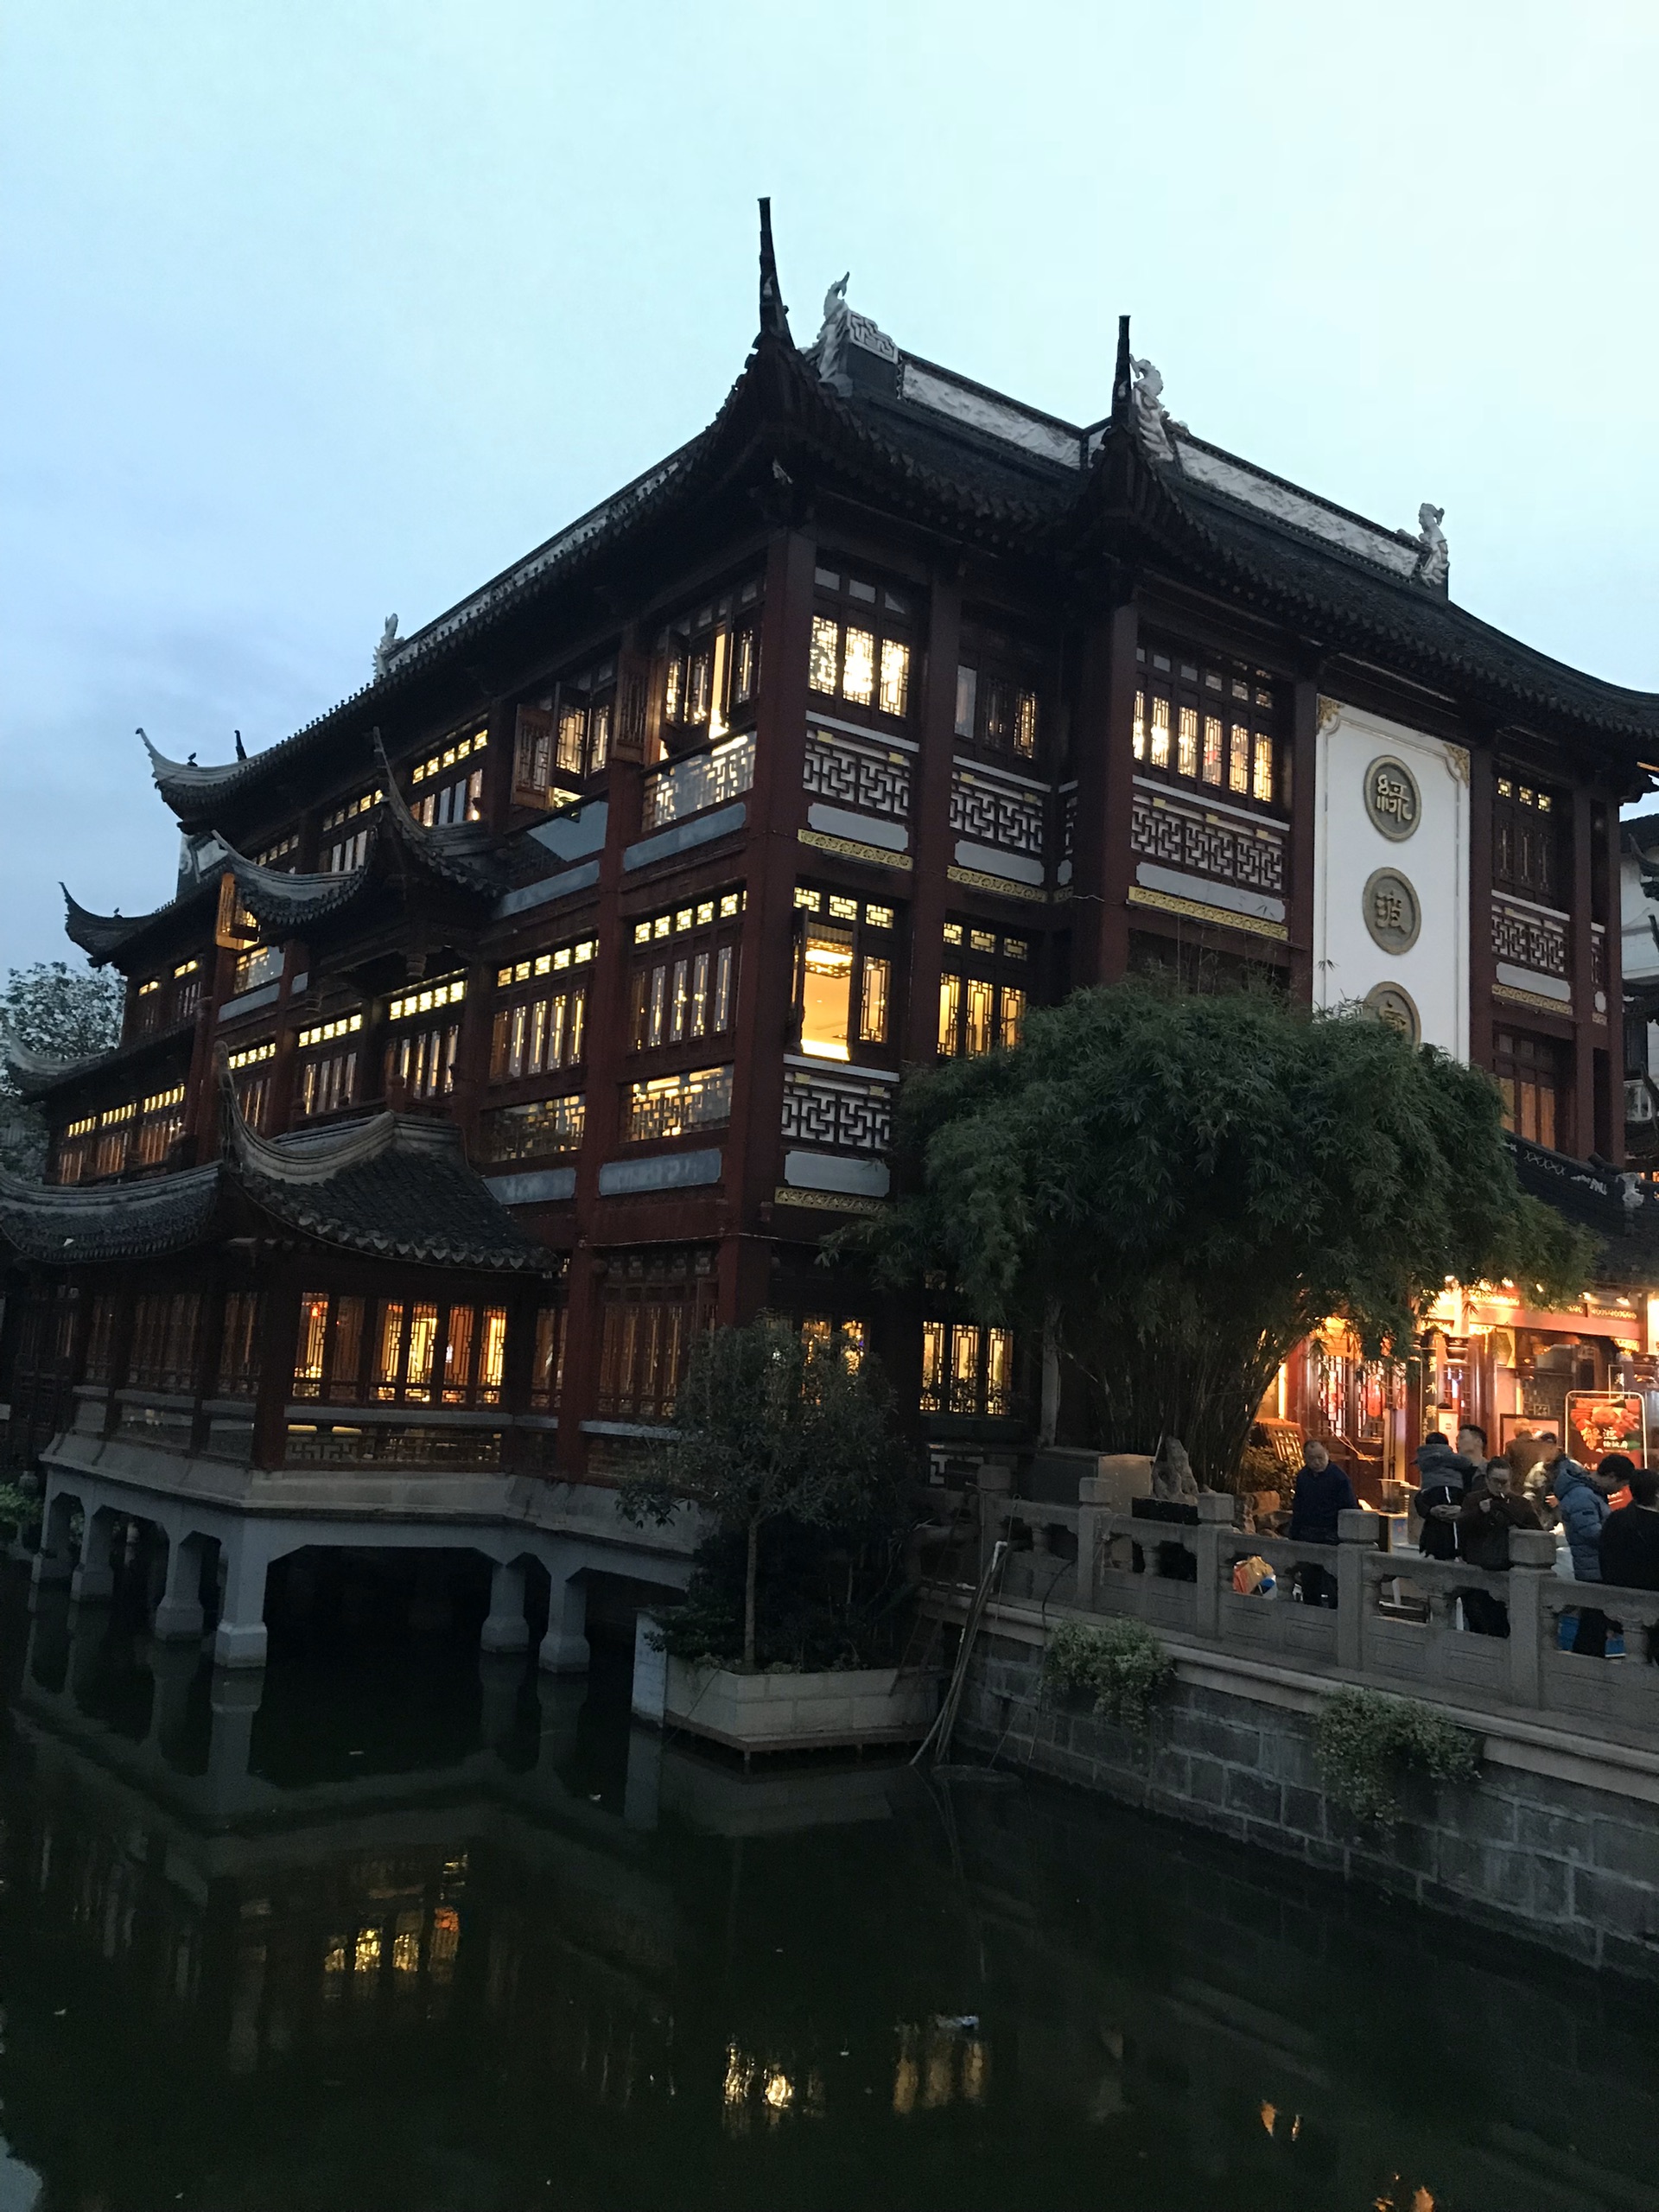 上海城隍庙九曲桥夜景图片